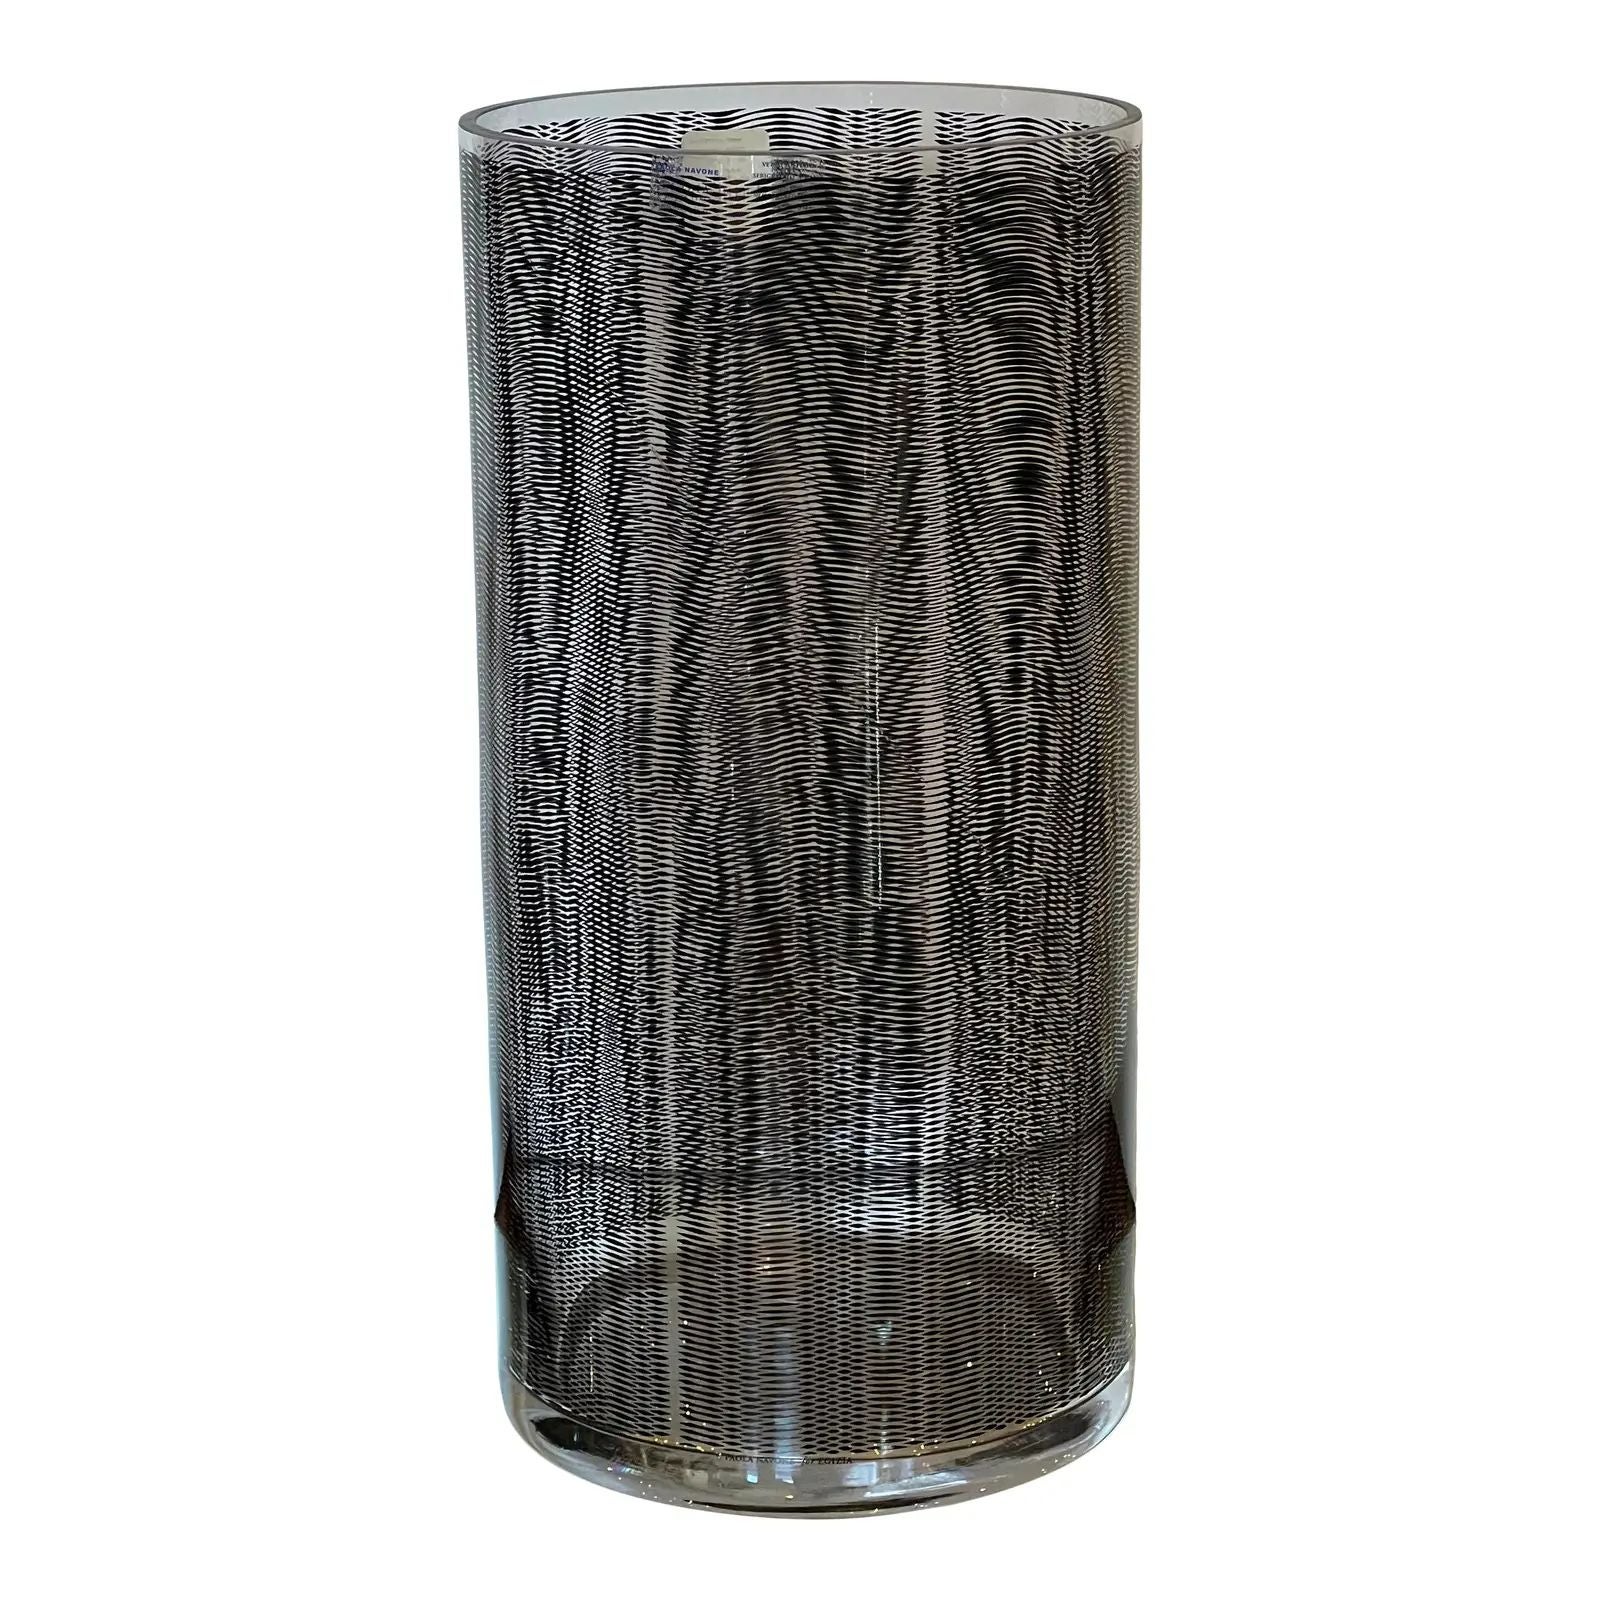 Paola Navone Egizia Italian Art Glass Vase, 2010s For Sale